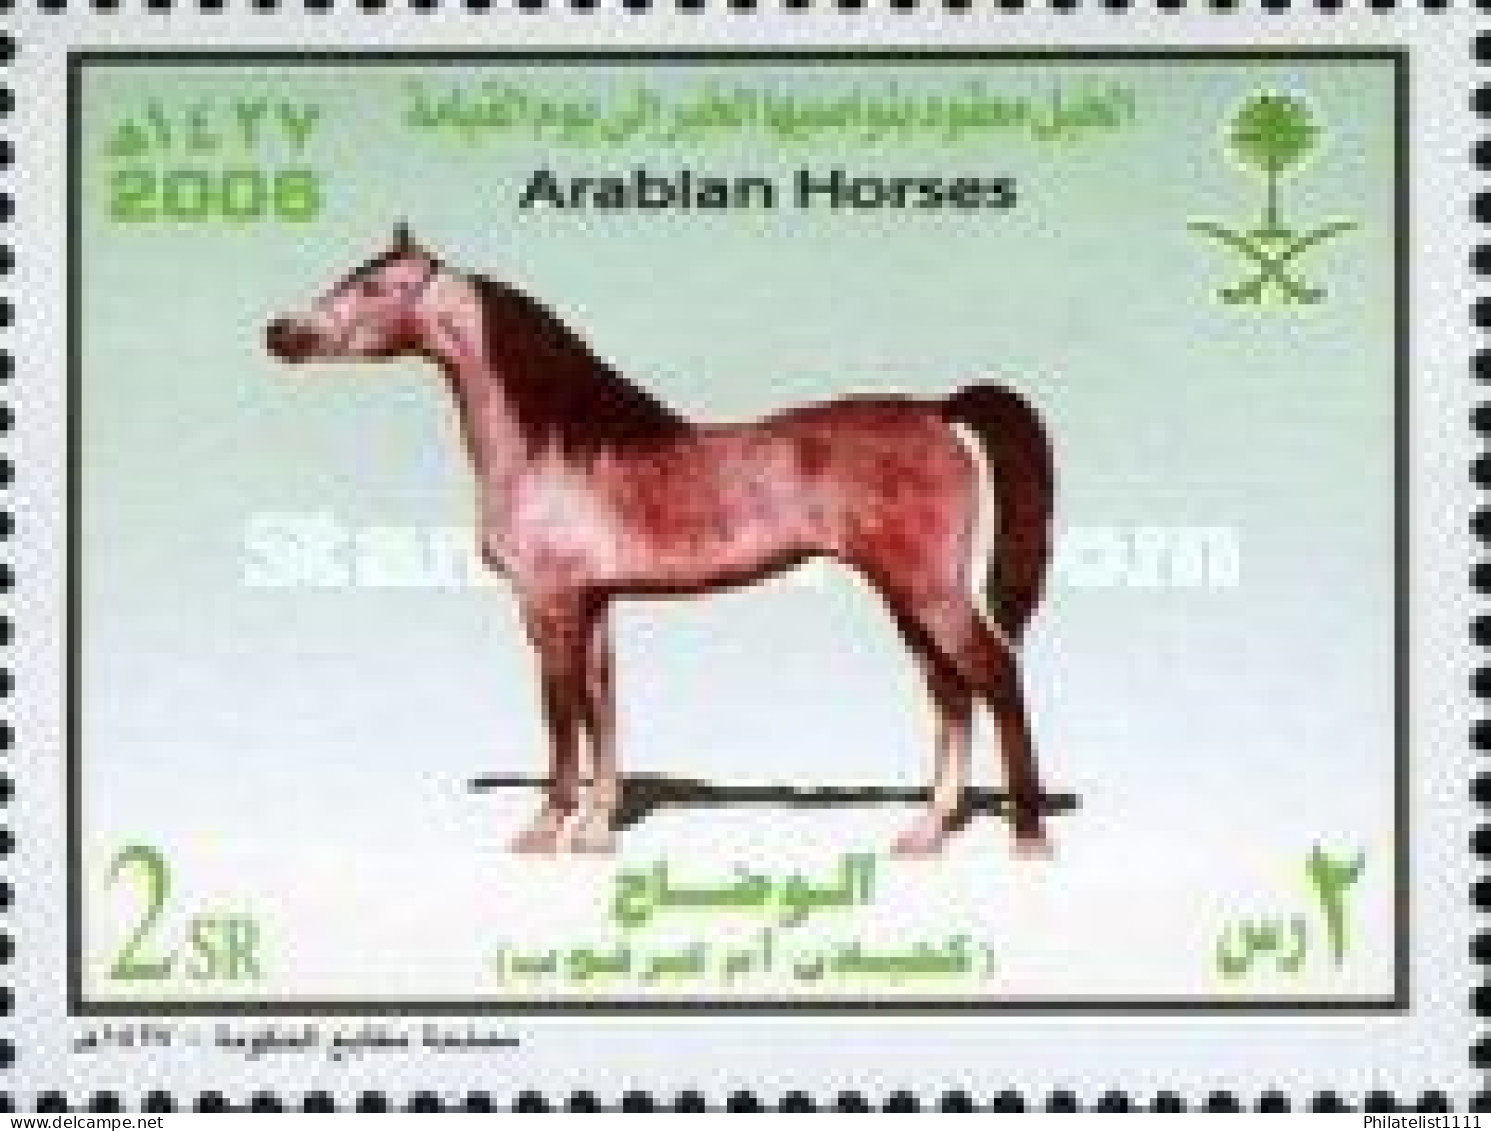 Horses - Saudi Arabia